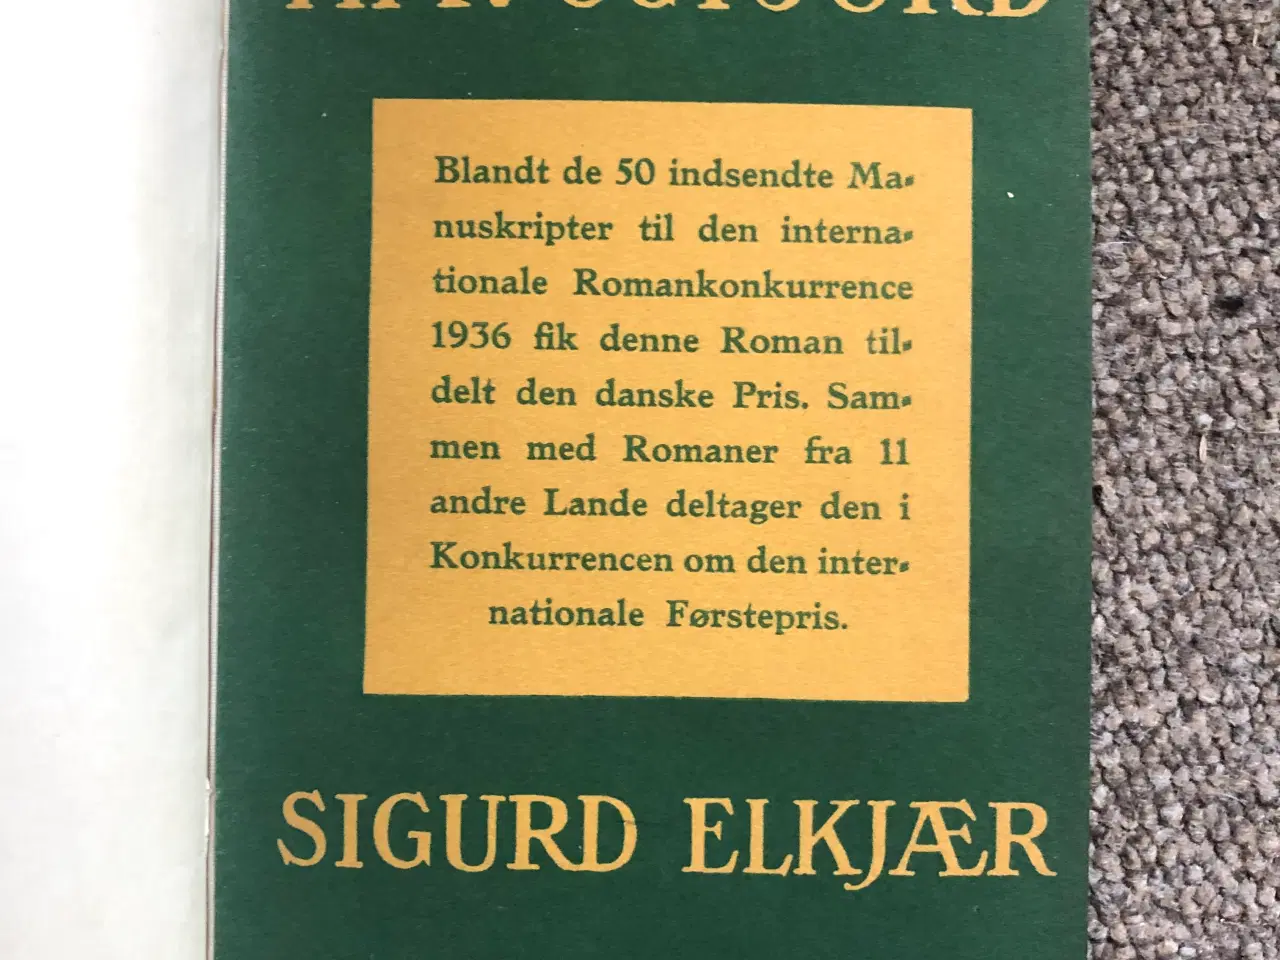 Billede 5 - Sigurd Elkjær signeret bog. 